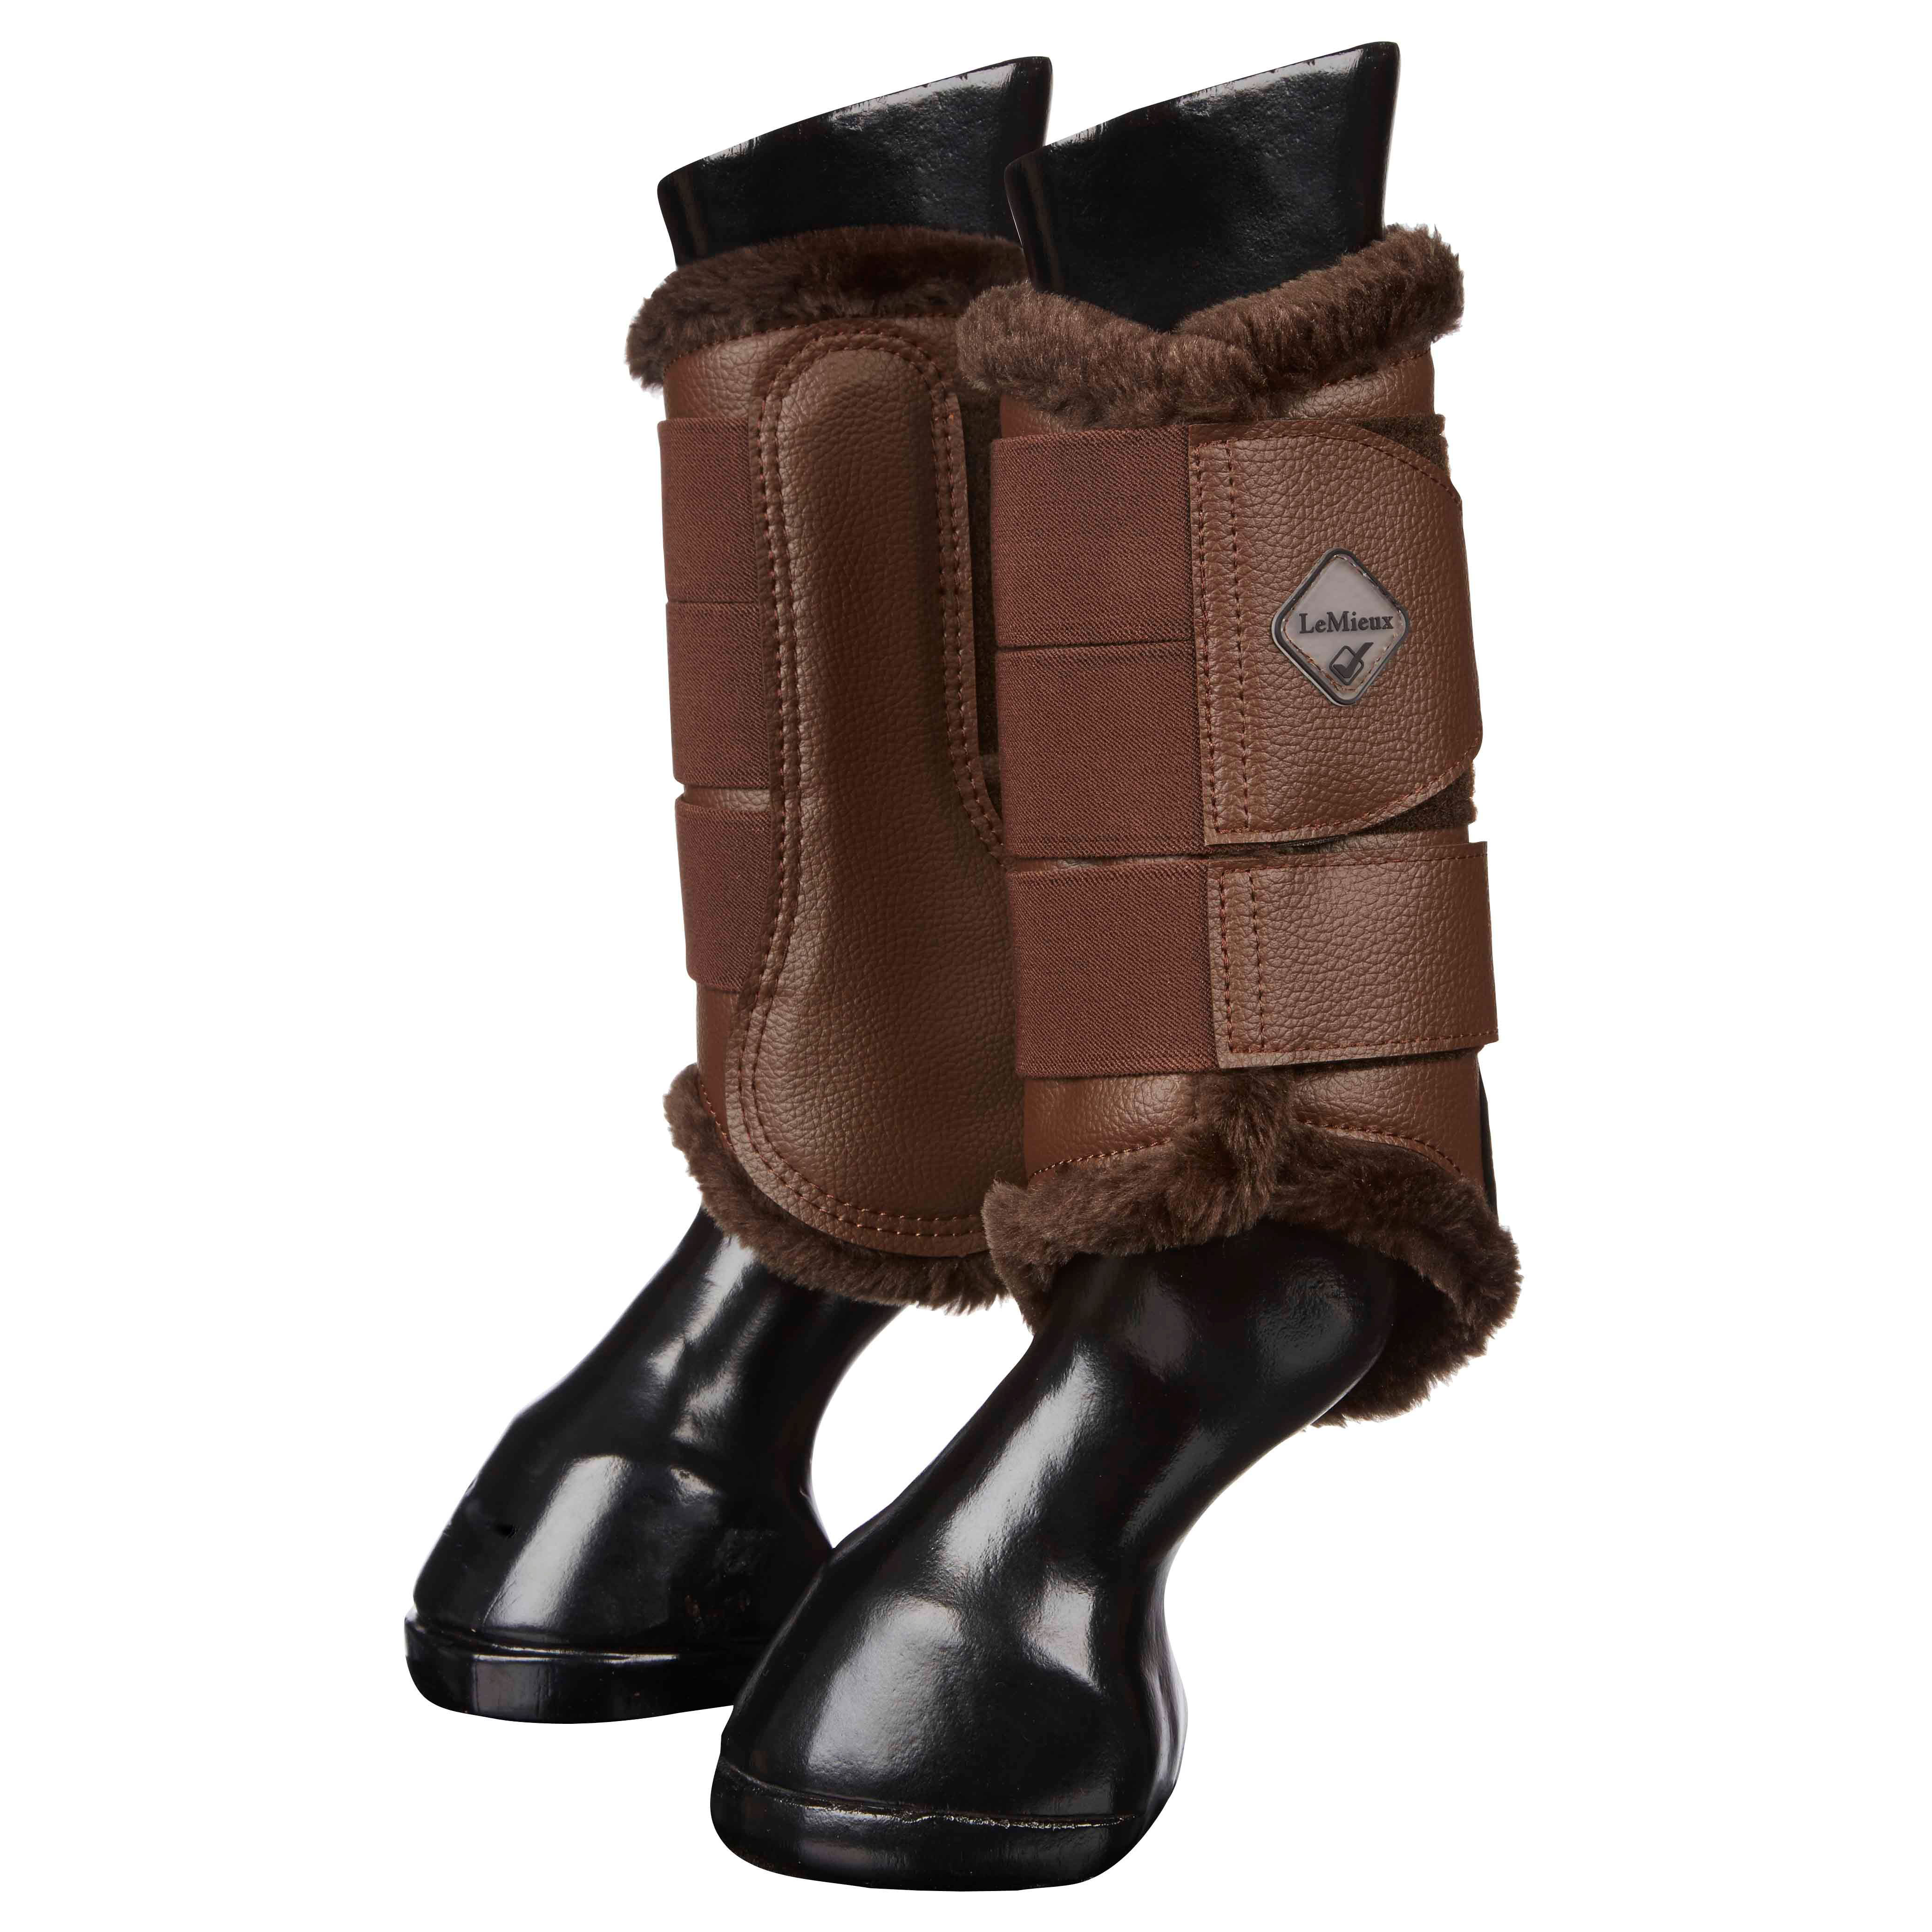 David Dyer Saddles - LeMieux Fleece Brushing Boots